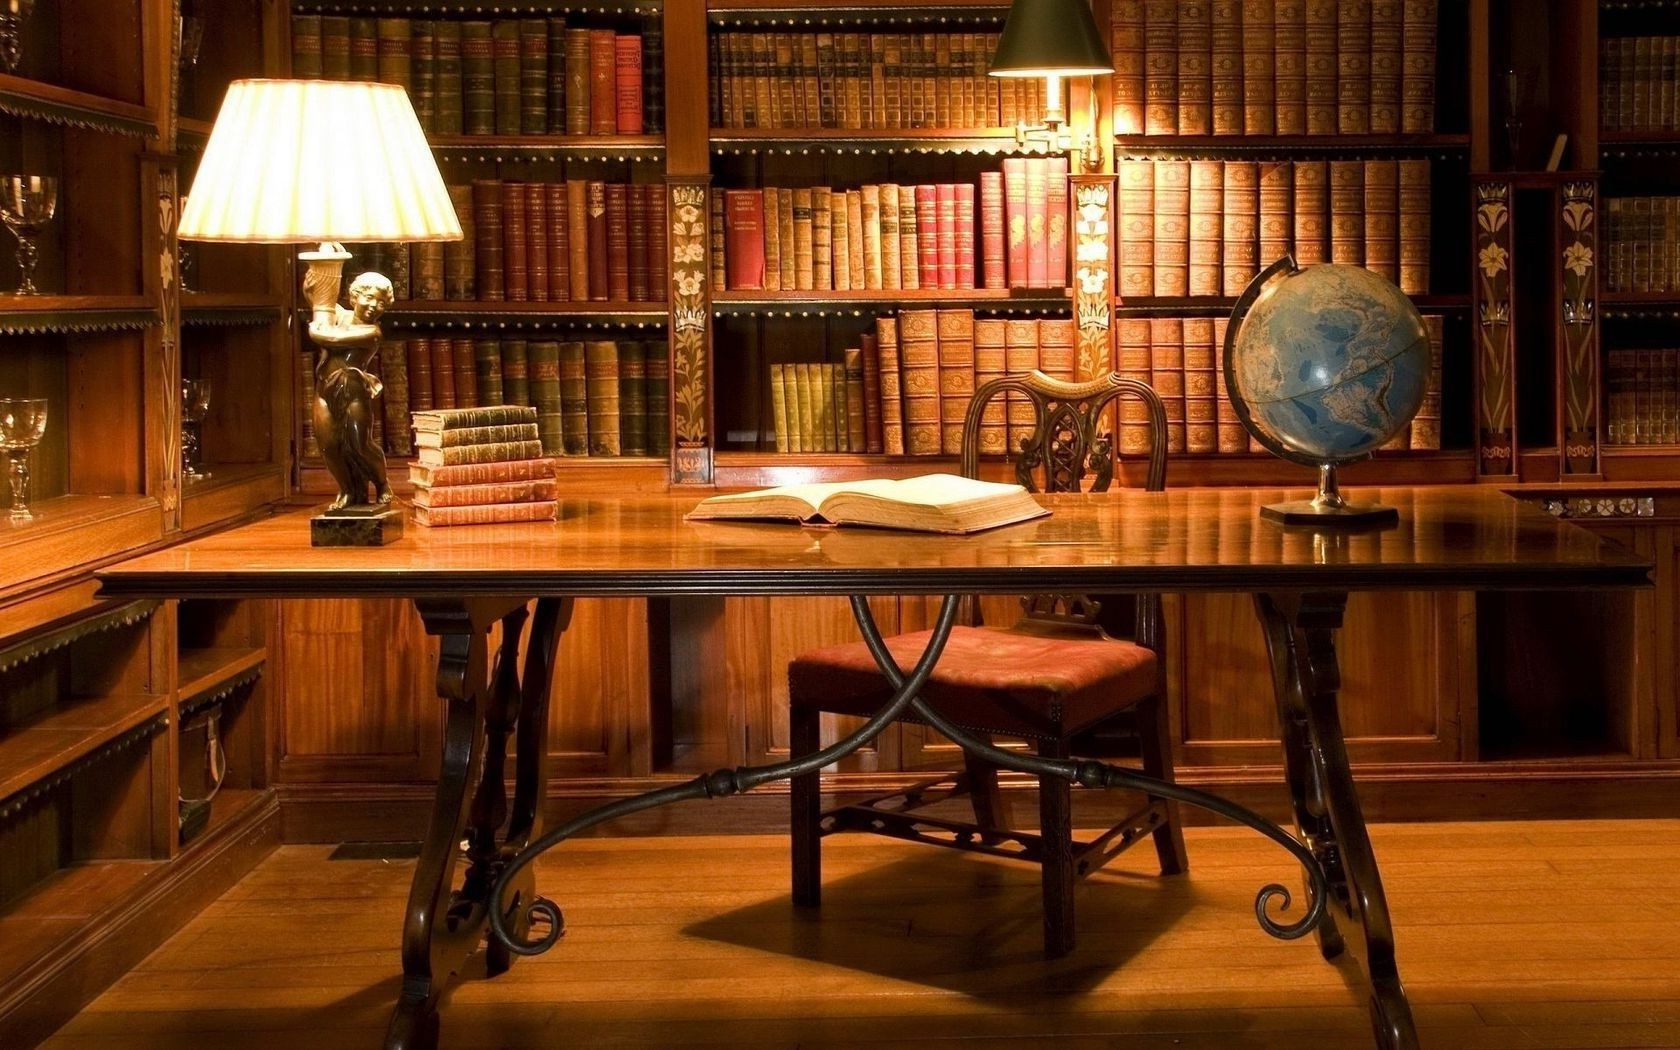 рабочий кабинет мебель полка этажерка номер таблица в помещении лампа внутри место древесины стул библиотека дизайн интерьера дом роскошные дома семья архитектура